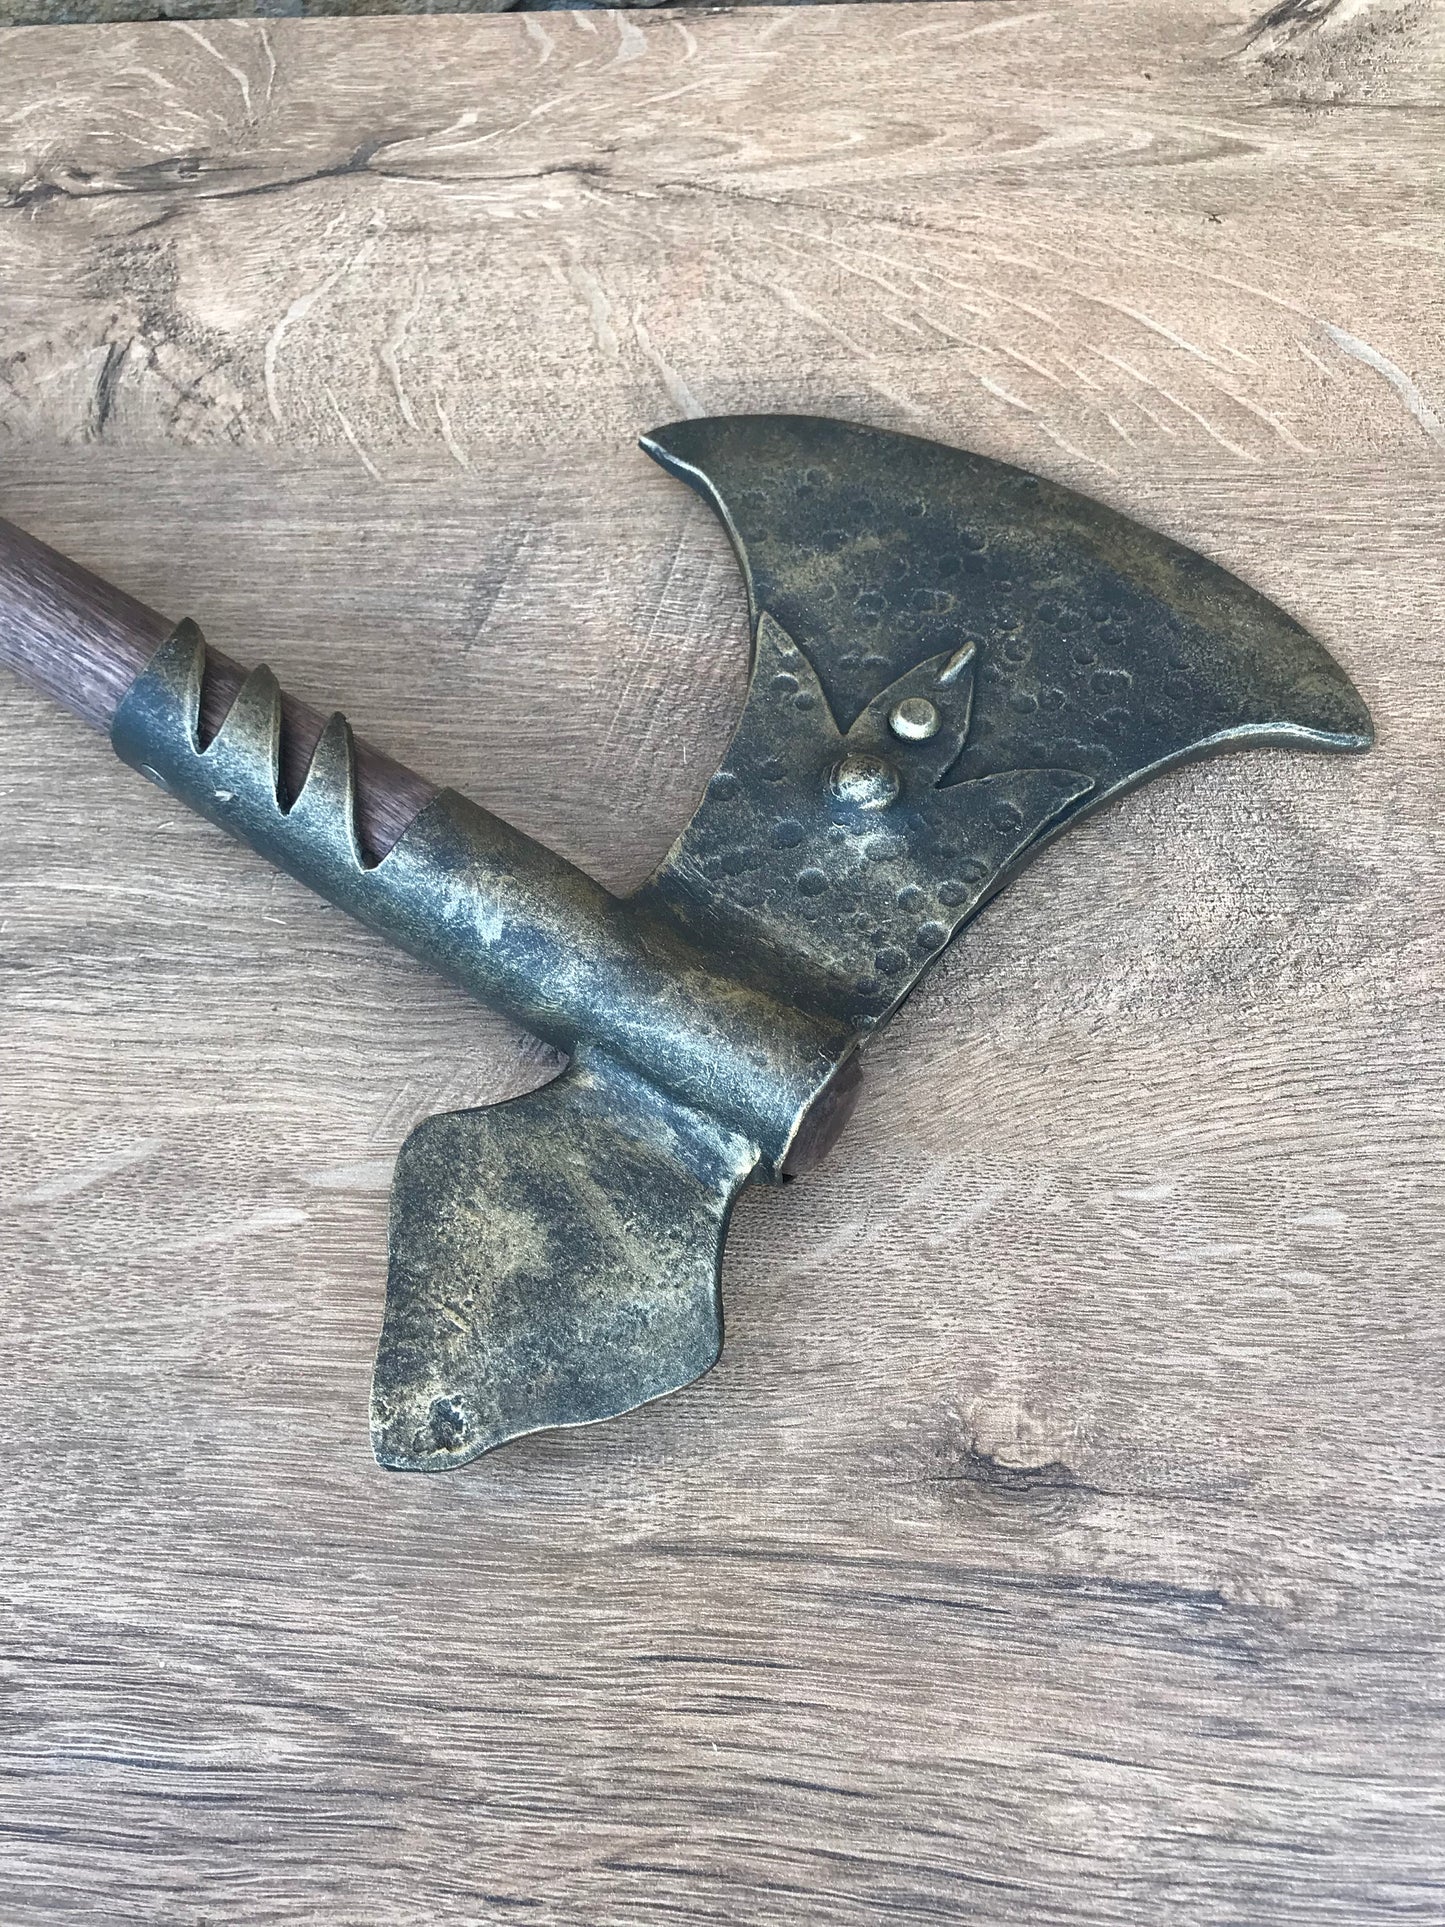 Viking axe, replica weapons, replica armor, replica axe, medieval axe, axe, combat axe, SCA axe, LARP axe, crusader axe, Middle Ages axe